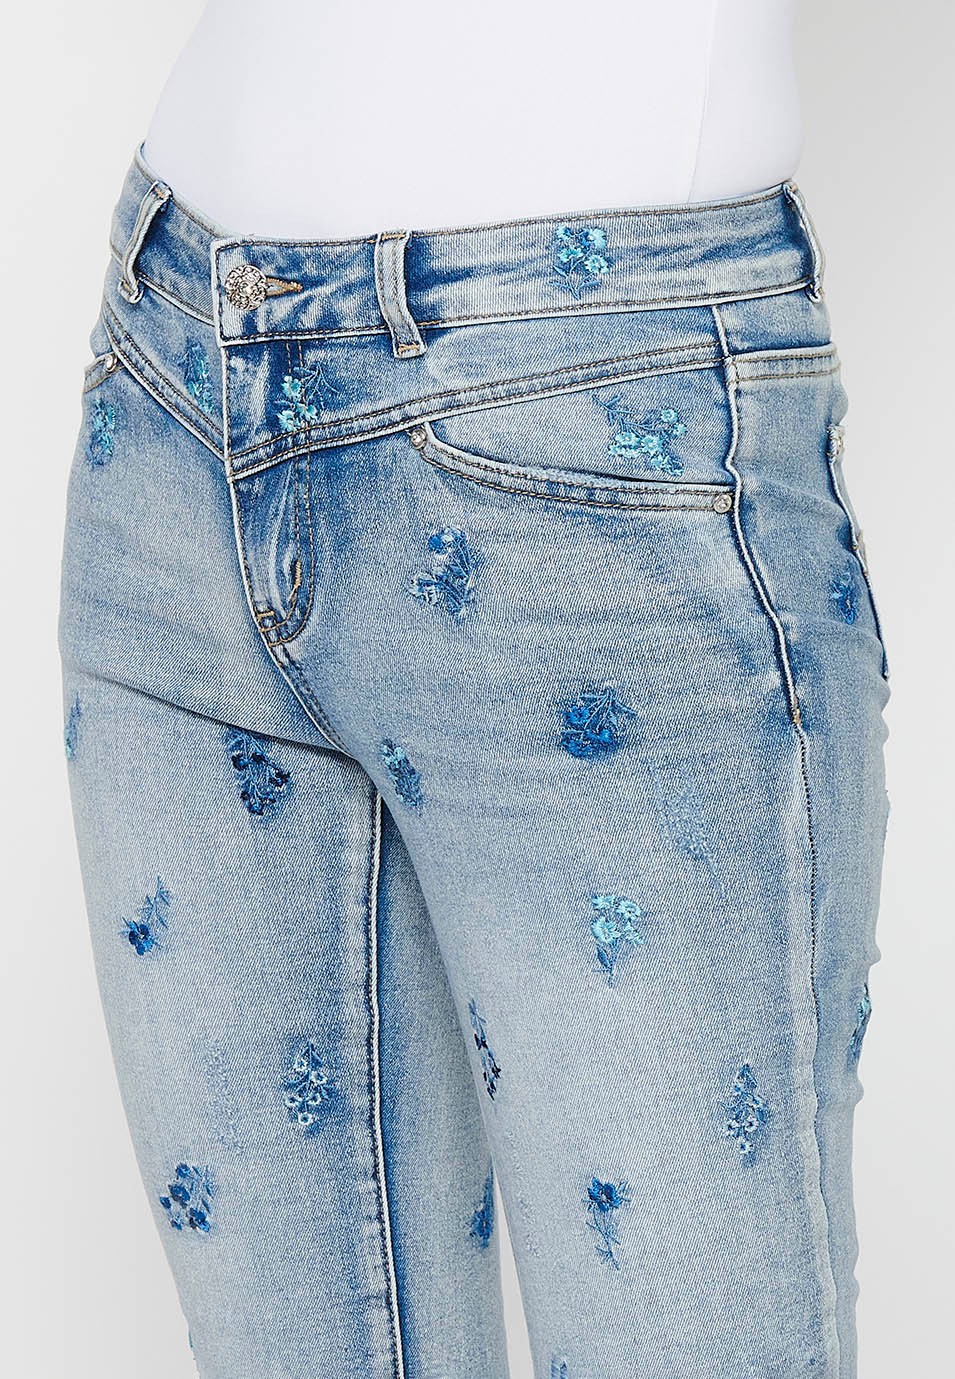 Pantalons llargs slim amb Tancament davanter amb cremallera i botó amb Brodats florals Color Blau Clar per a Dona 5